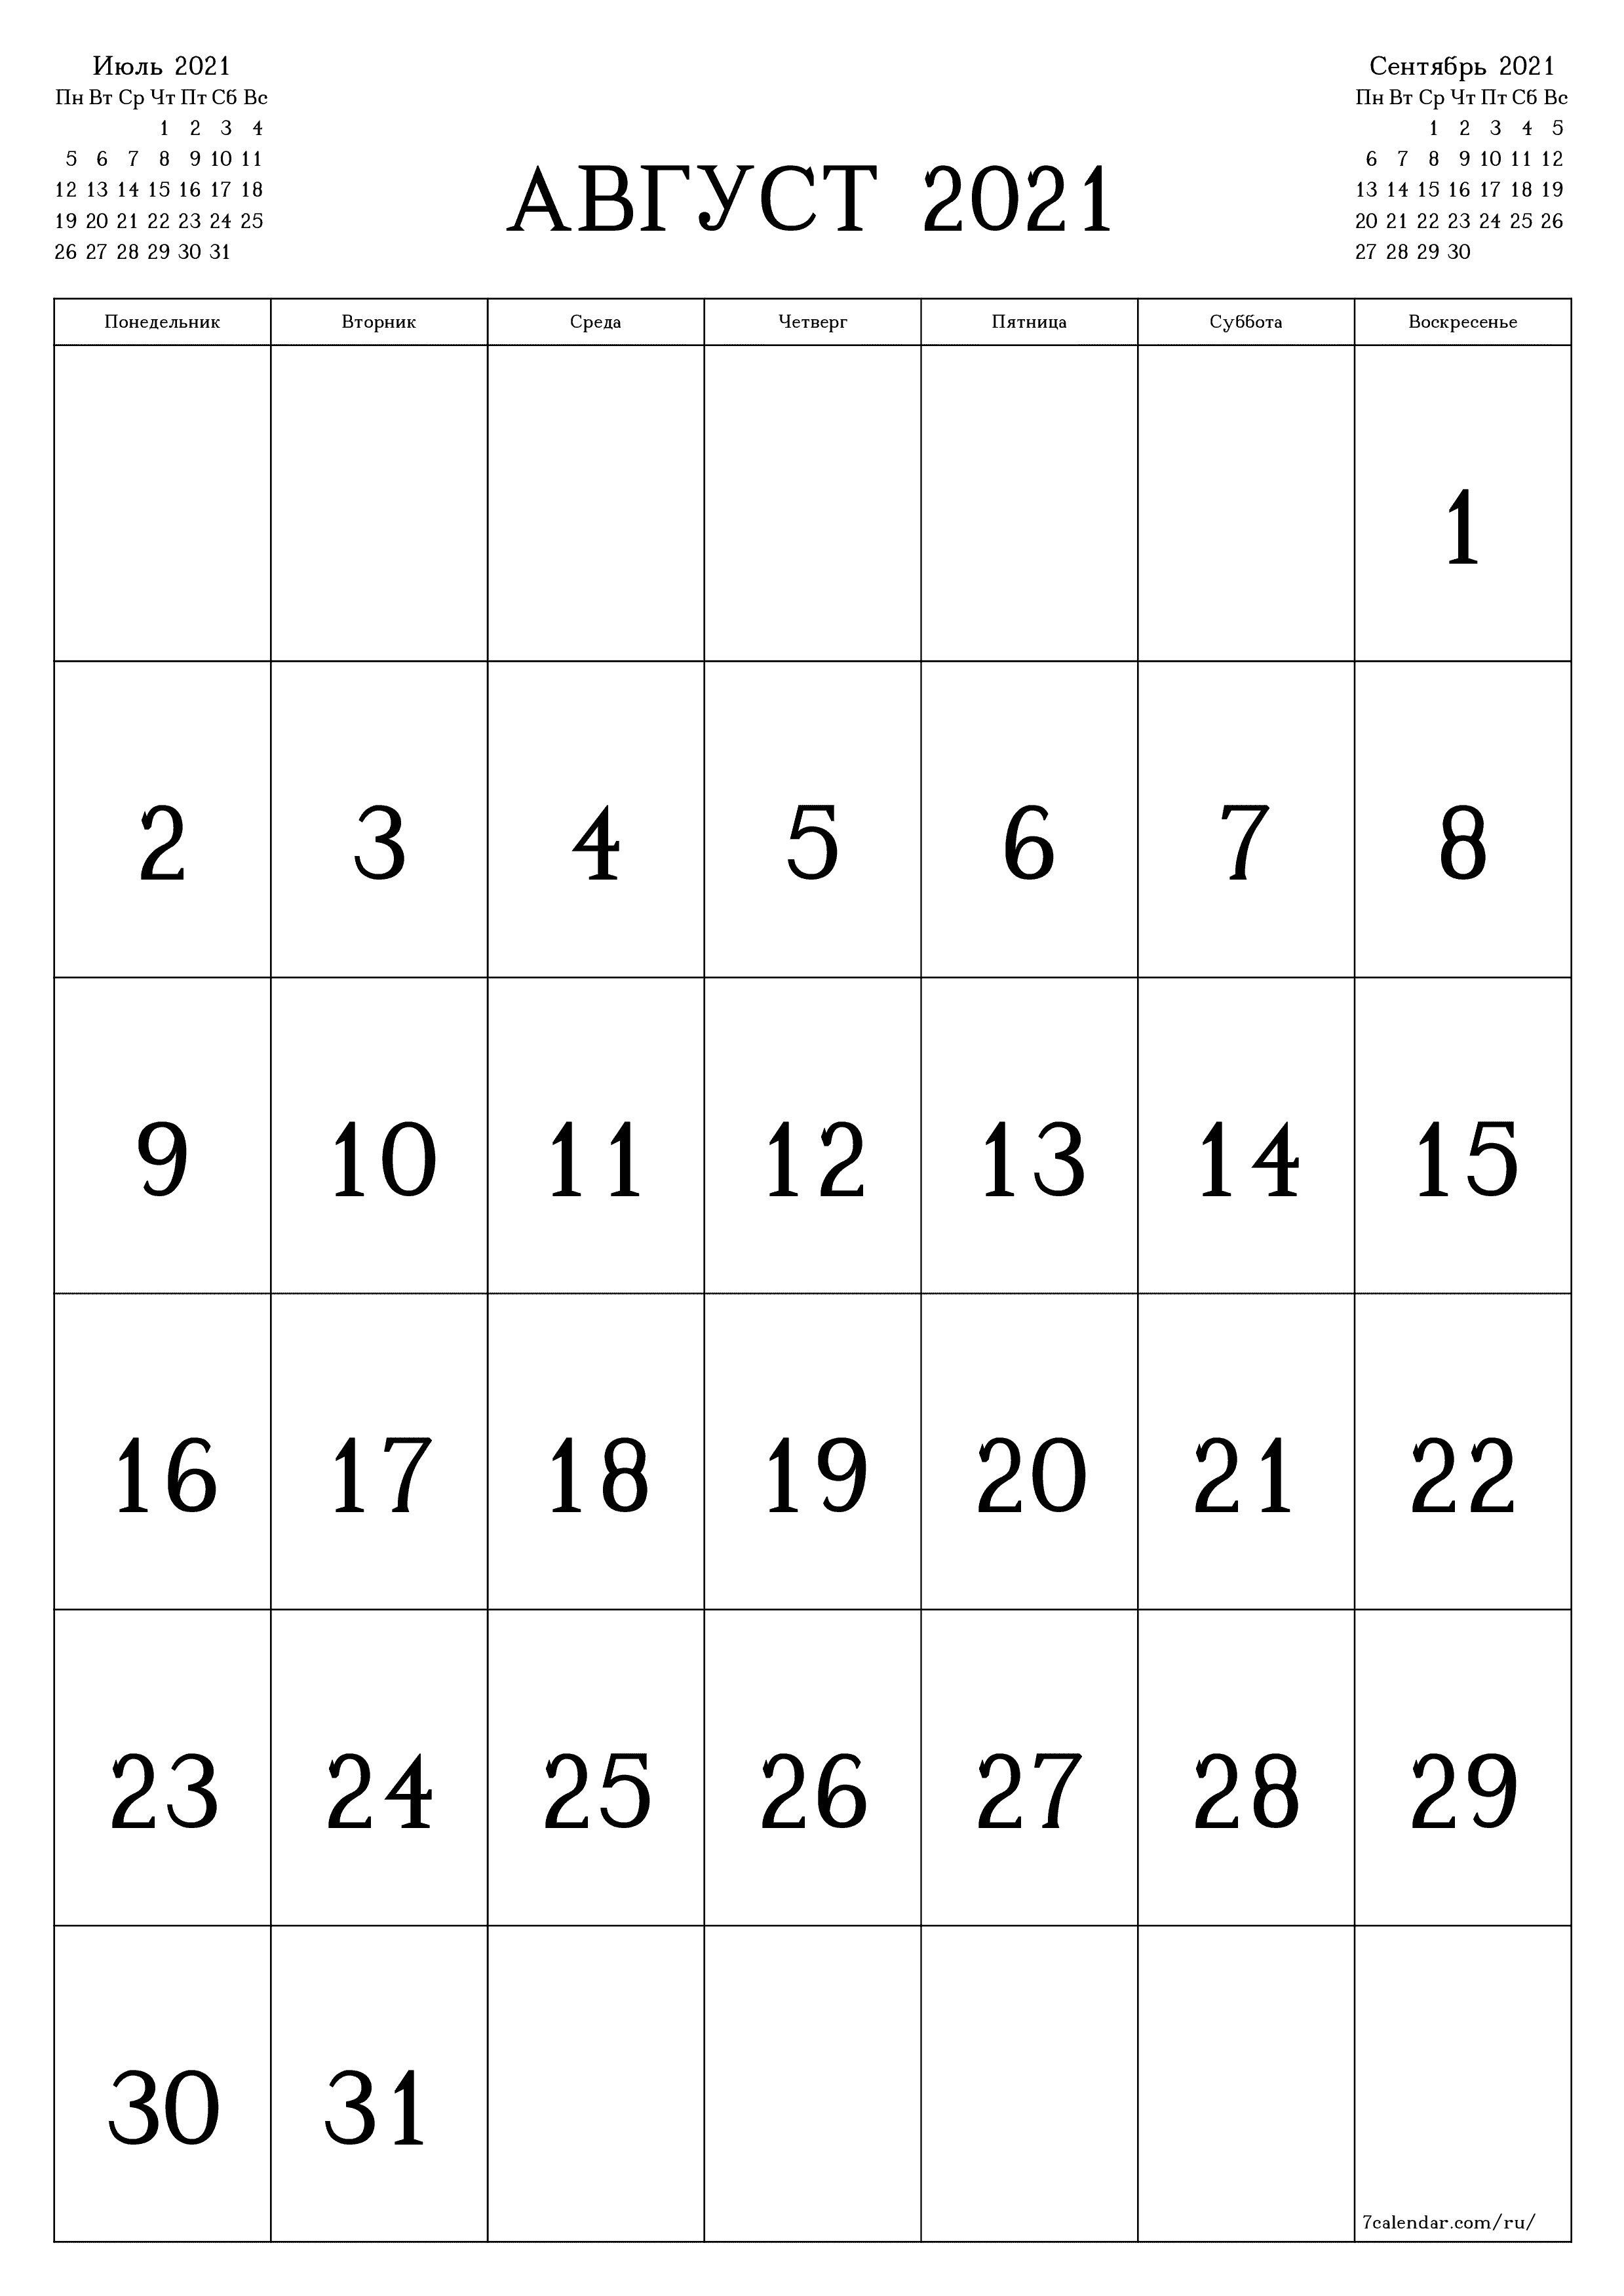 Пустой ежемесячный календарь-планер на месяц Август 2021